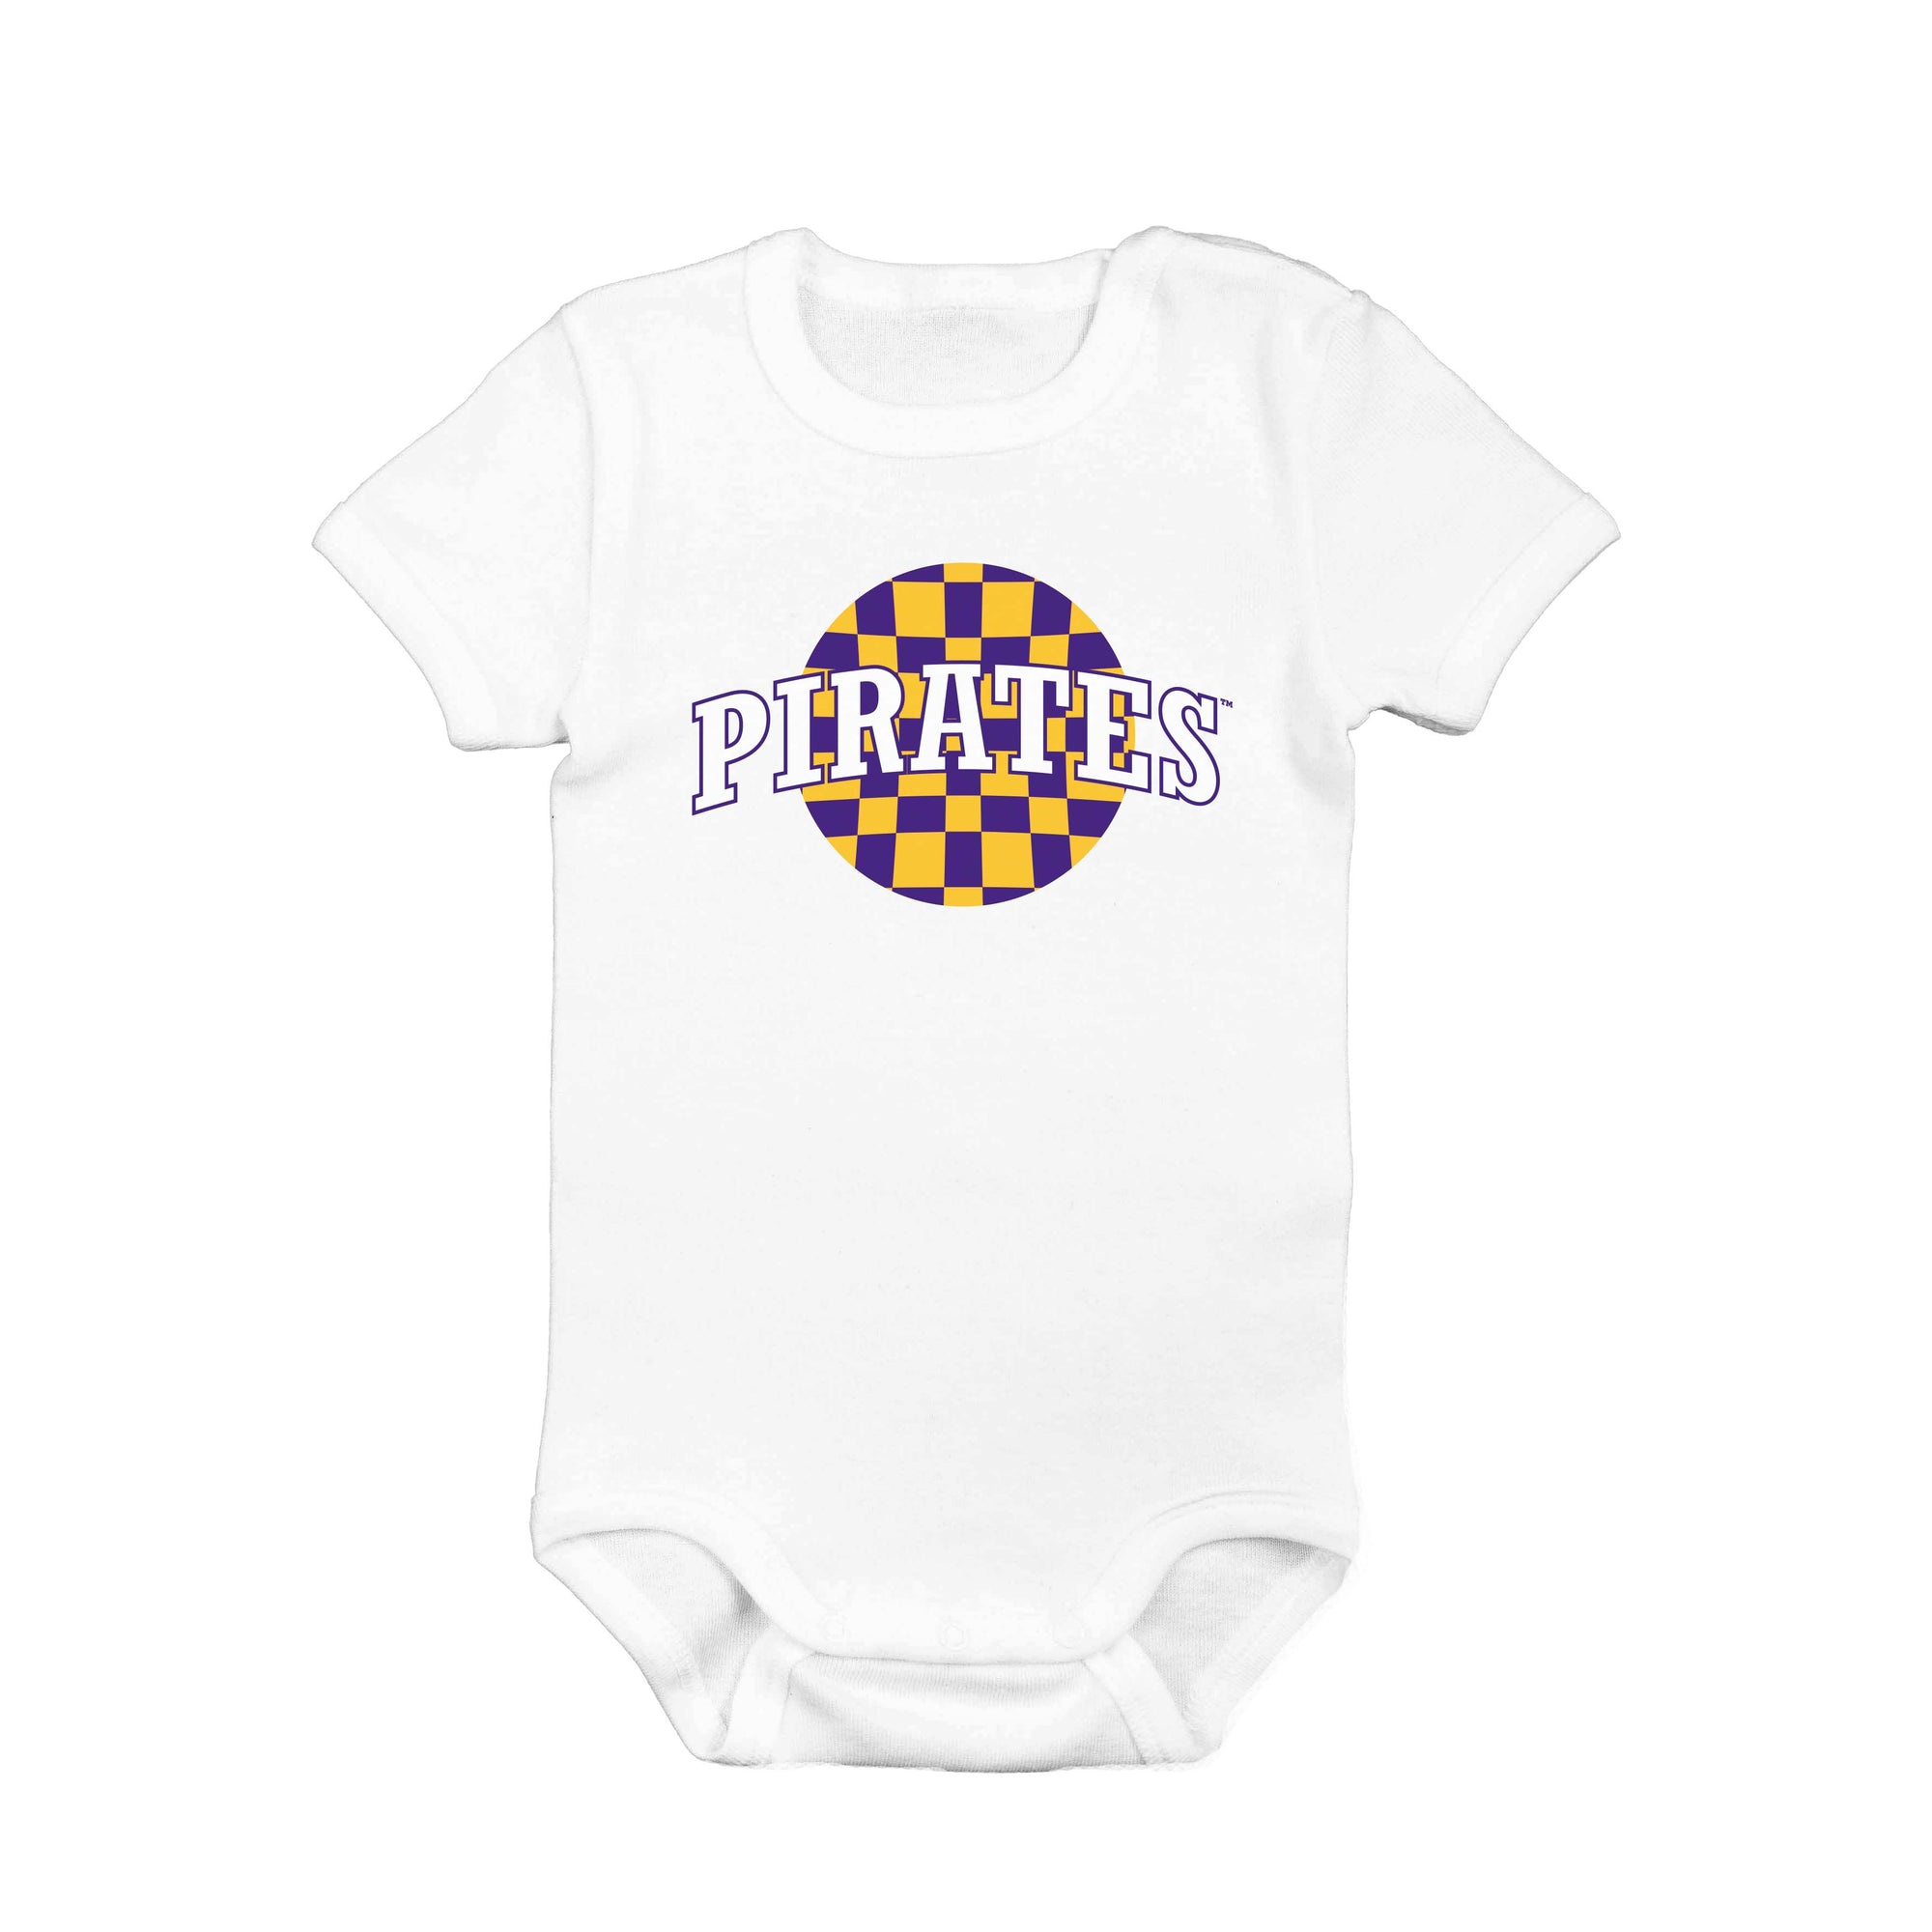 Pirates® Checkered Bodysuit/Toddler/Youth Shirt